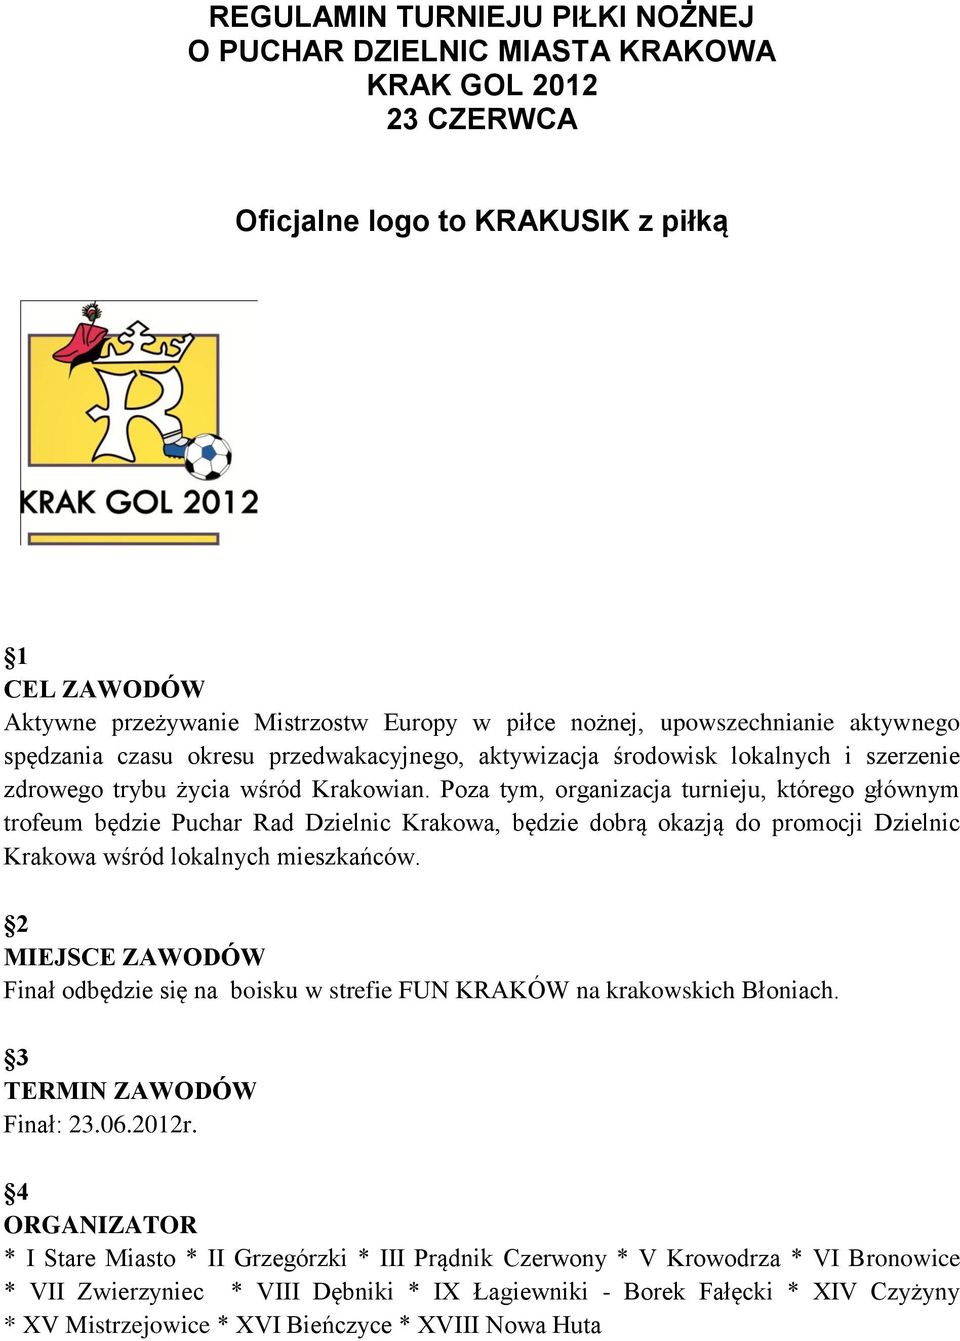 Poza tym, organizacja turnieju, którego głównym trofeum będzie Puchar Rad Dzielnic Krakowa, będzie dobrą okazją do promocji Dzielnic Krakowa wśród lokalnych mieszkańców.